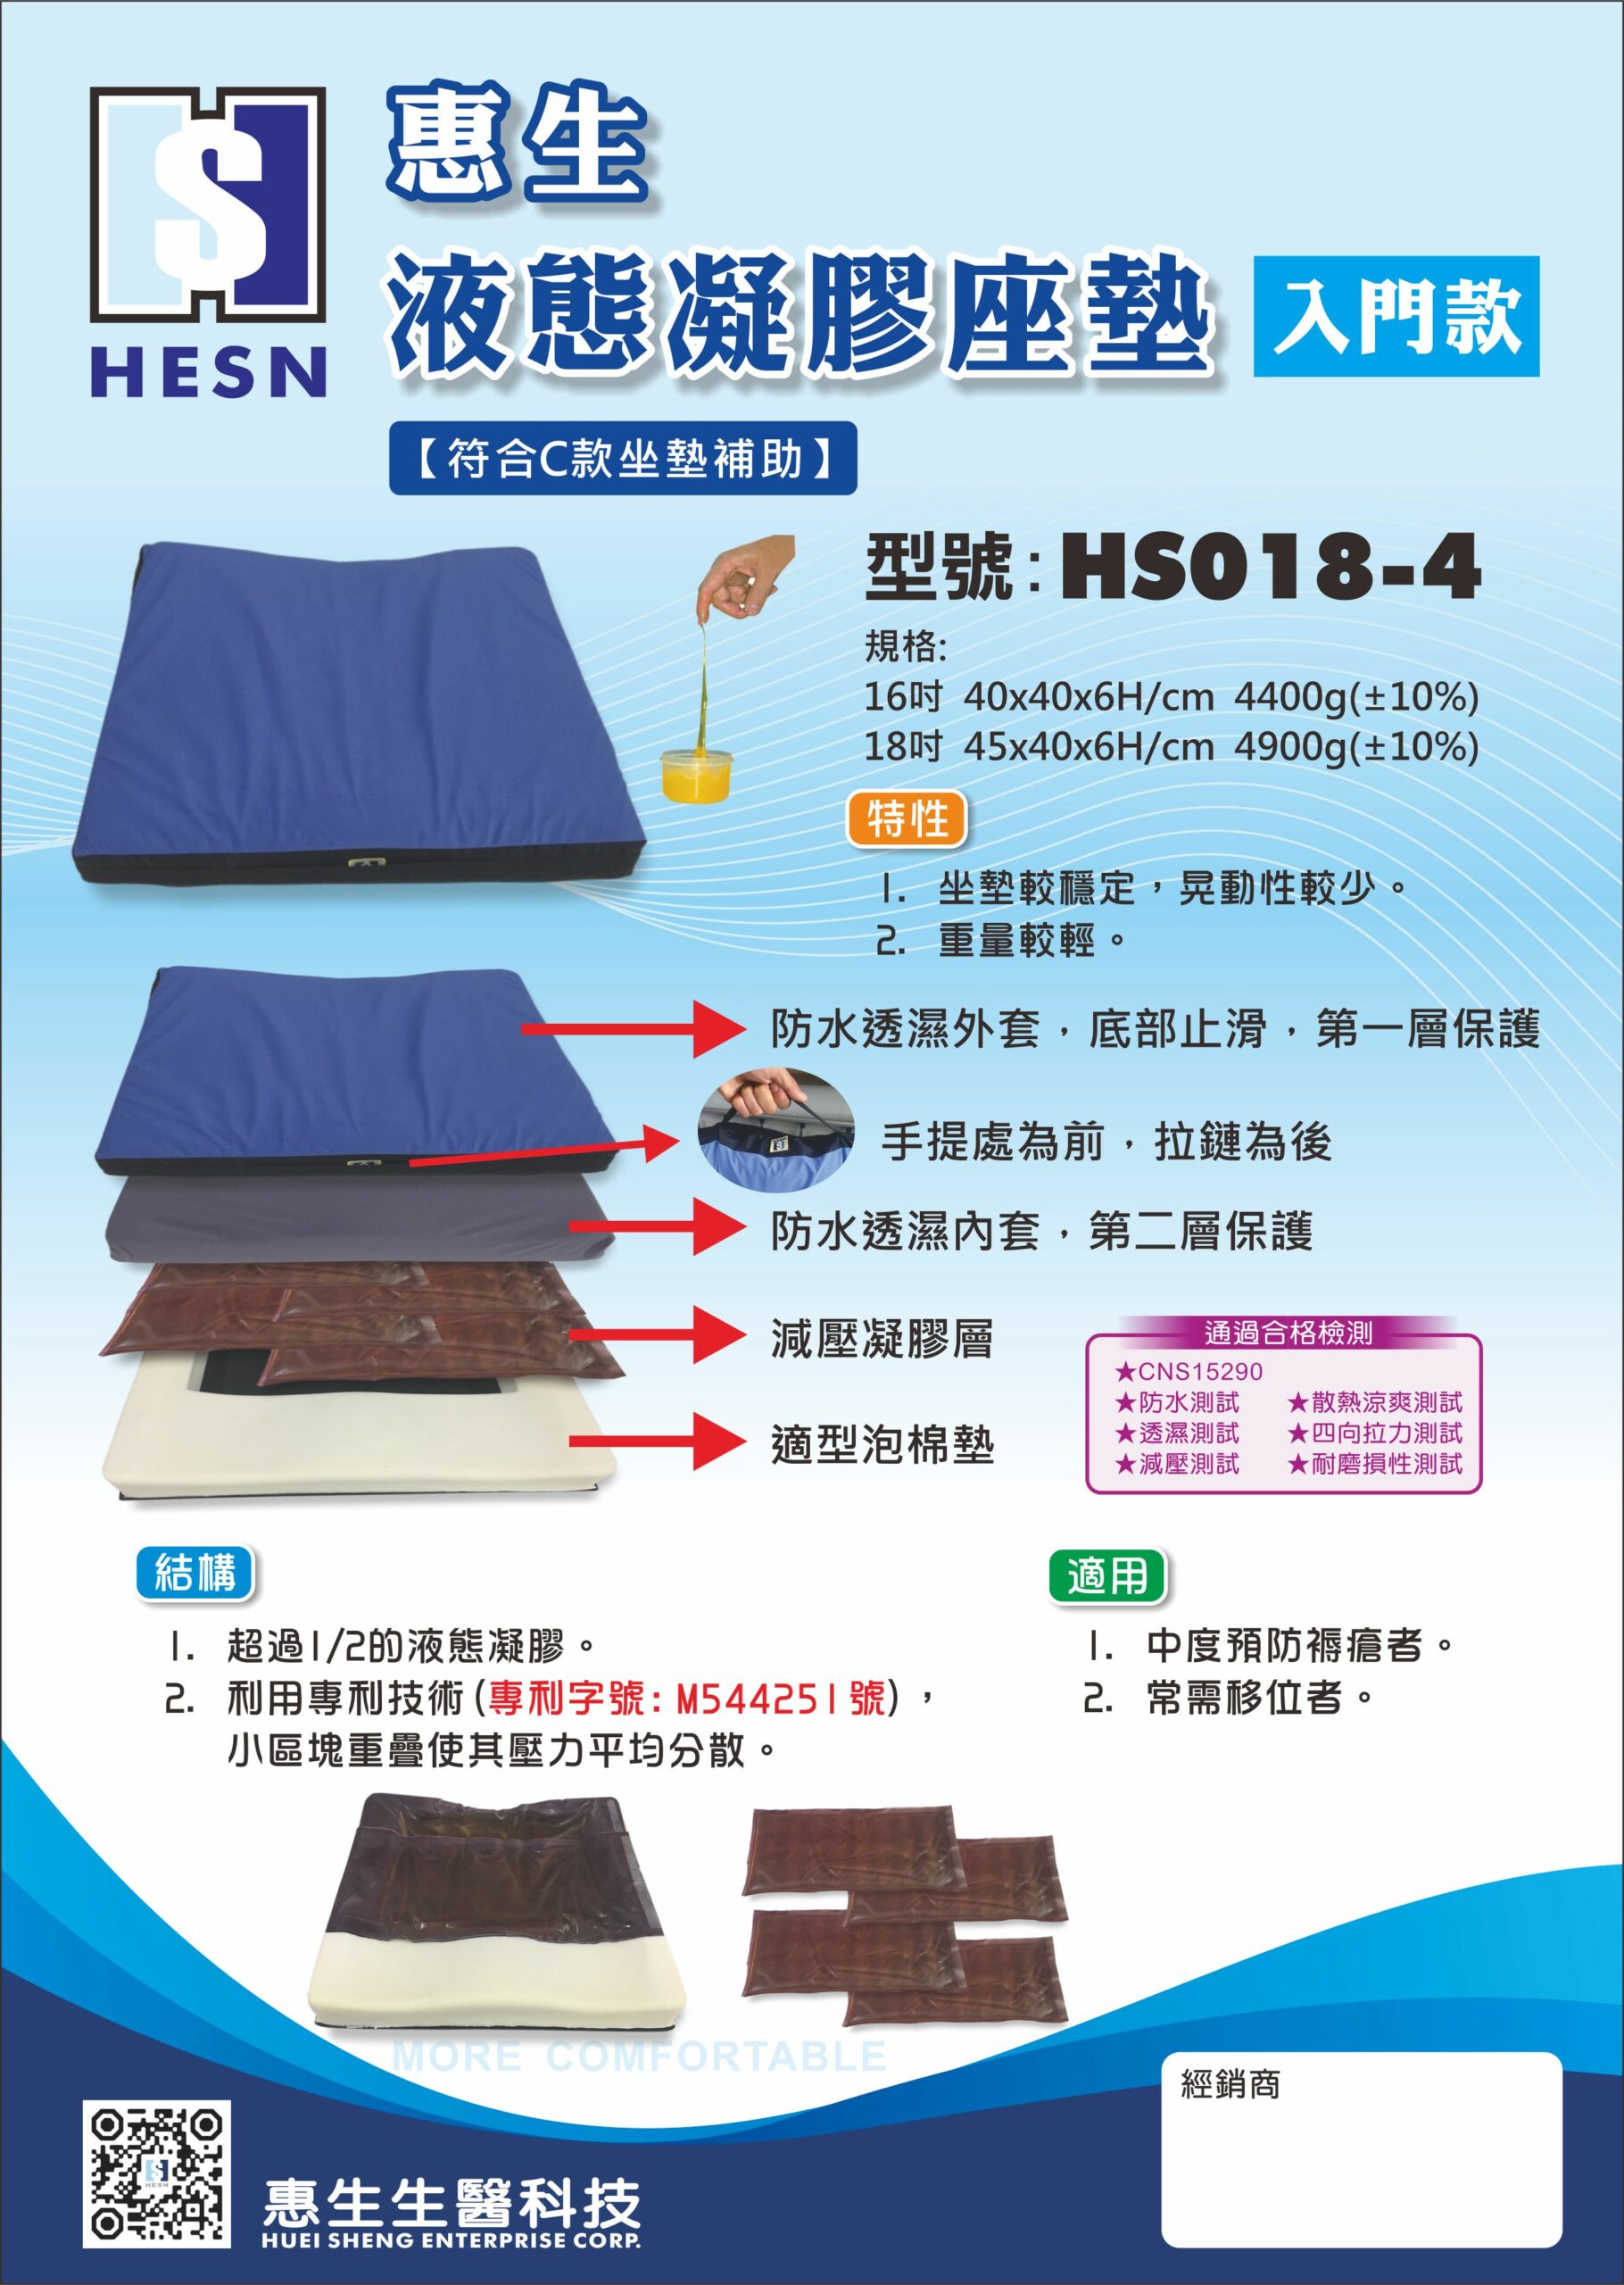 HS018-4液態凝膠座墊